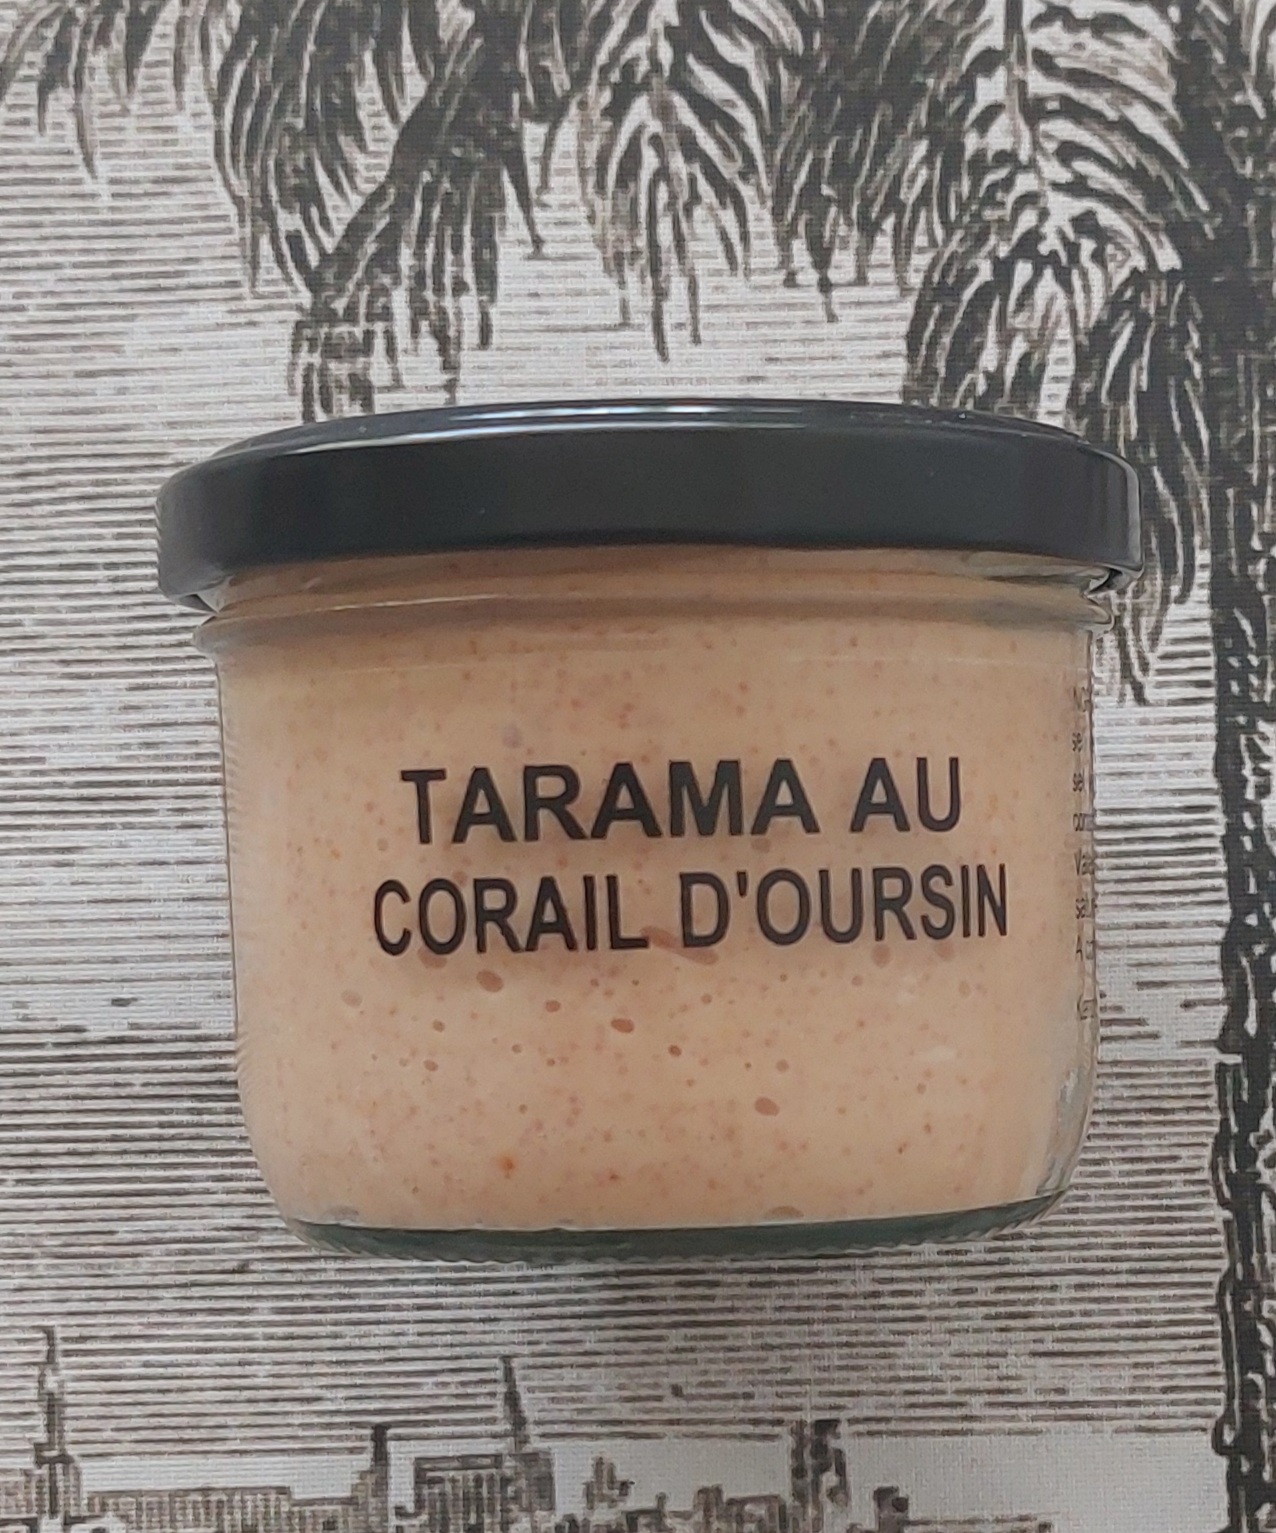 LA MAISON NORDIQUE Tarama with sea urchin coral 90g